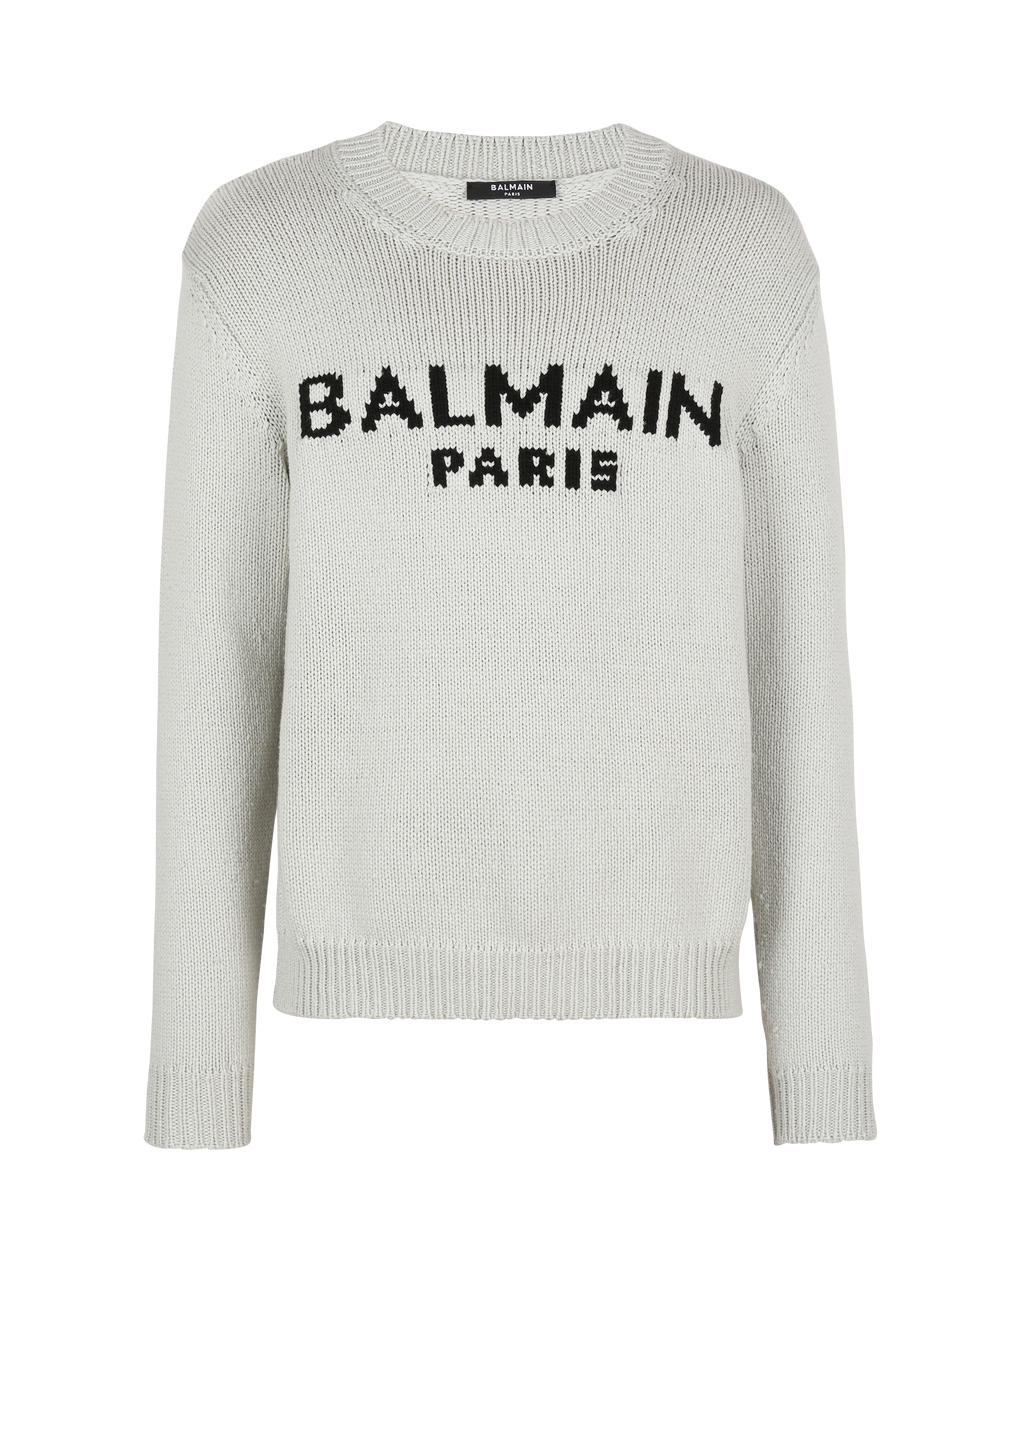 Balmain Paris标志羊毛套头衫, grey, hi-res